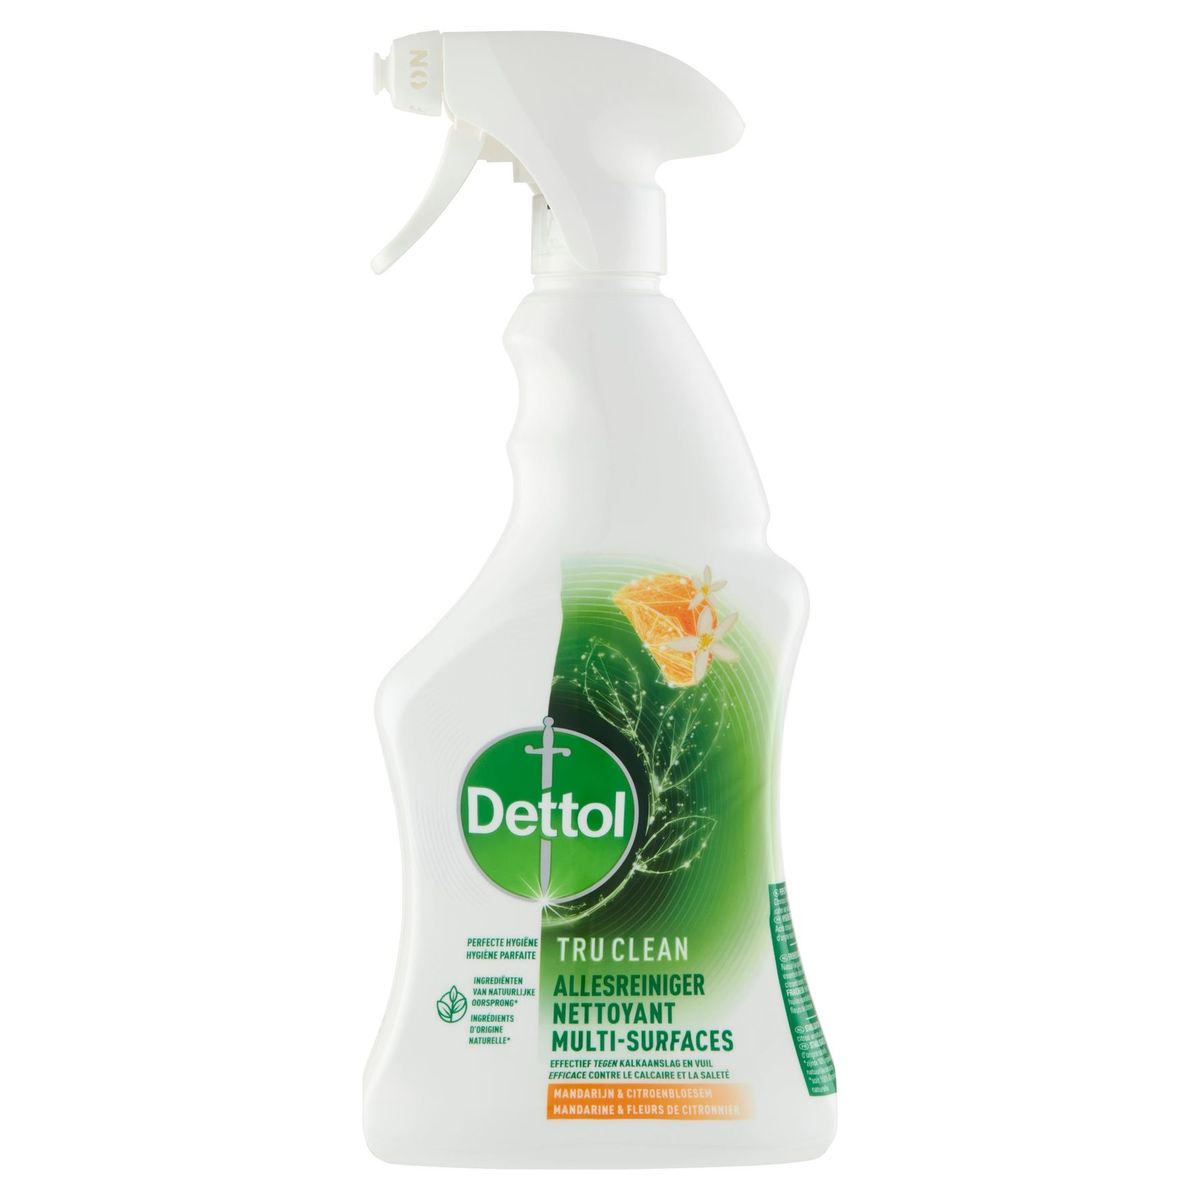 Dettol Tru Clean Nettoyant Multi-Surfaces Mandarine & Citronnier 500ml